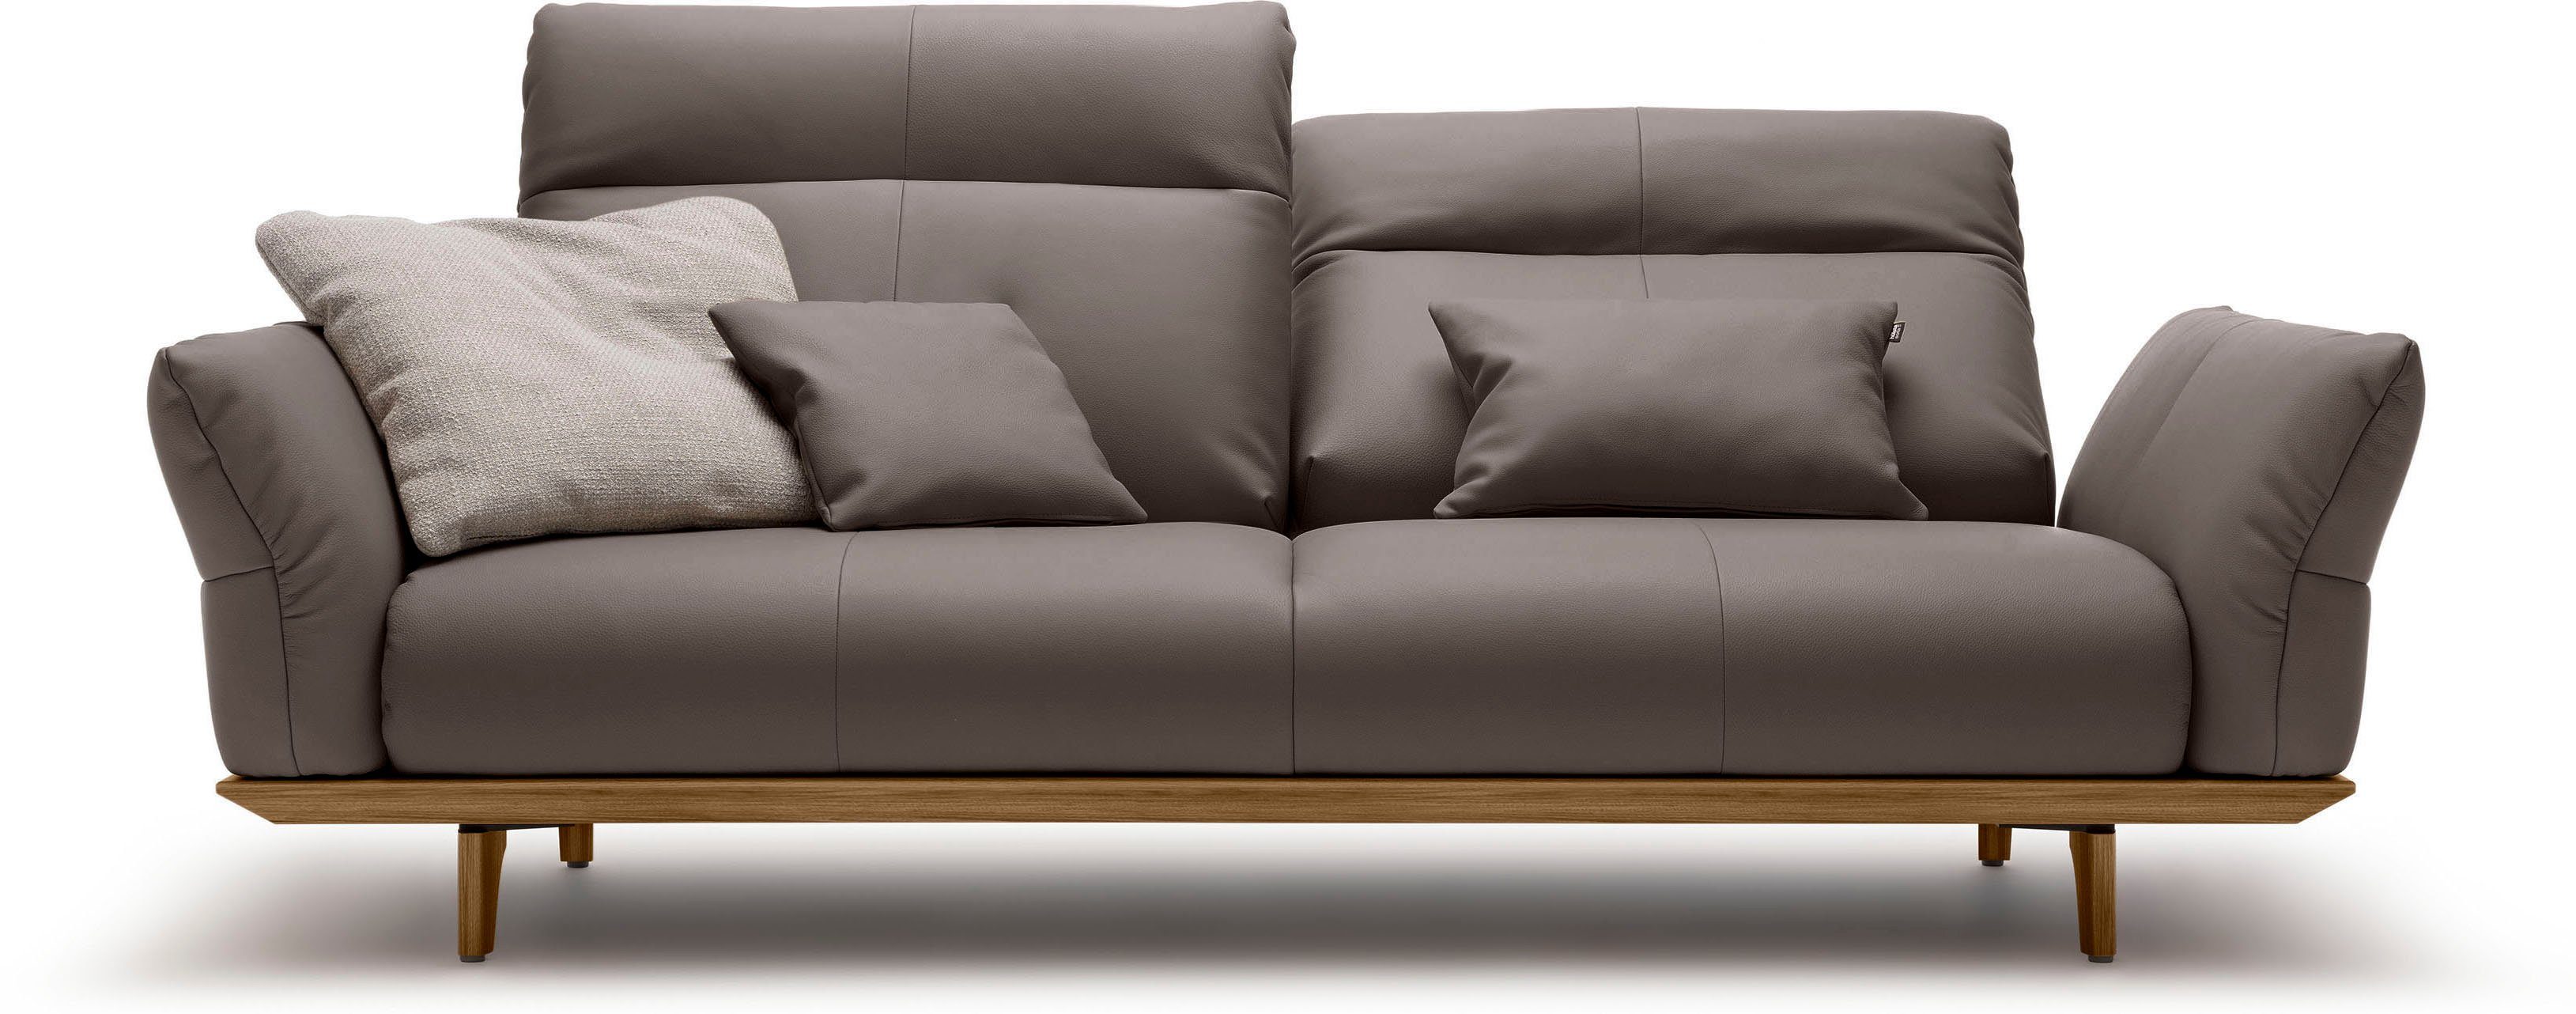 Sockel hülsta 208 Breite 3-Sitzer sofa Nussbaum, hs.460, Nussbaum, Füße in cm